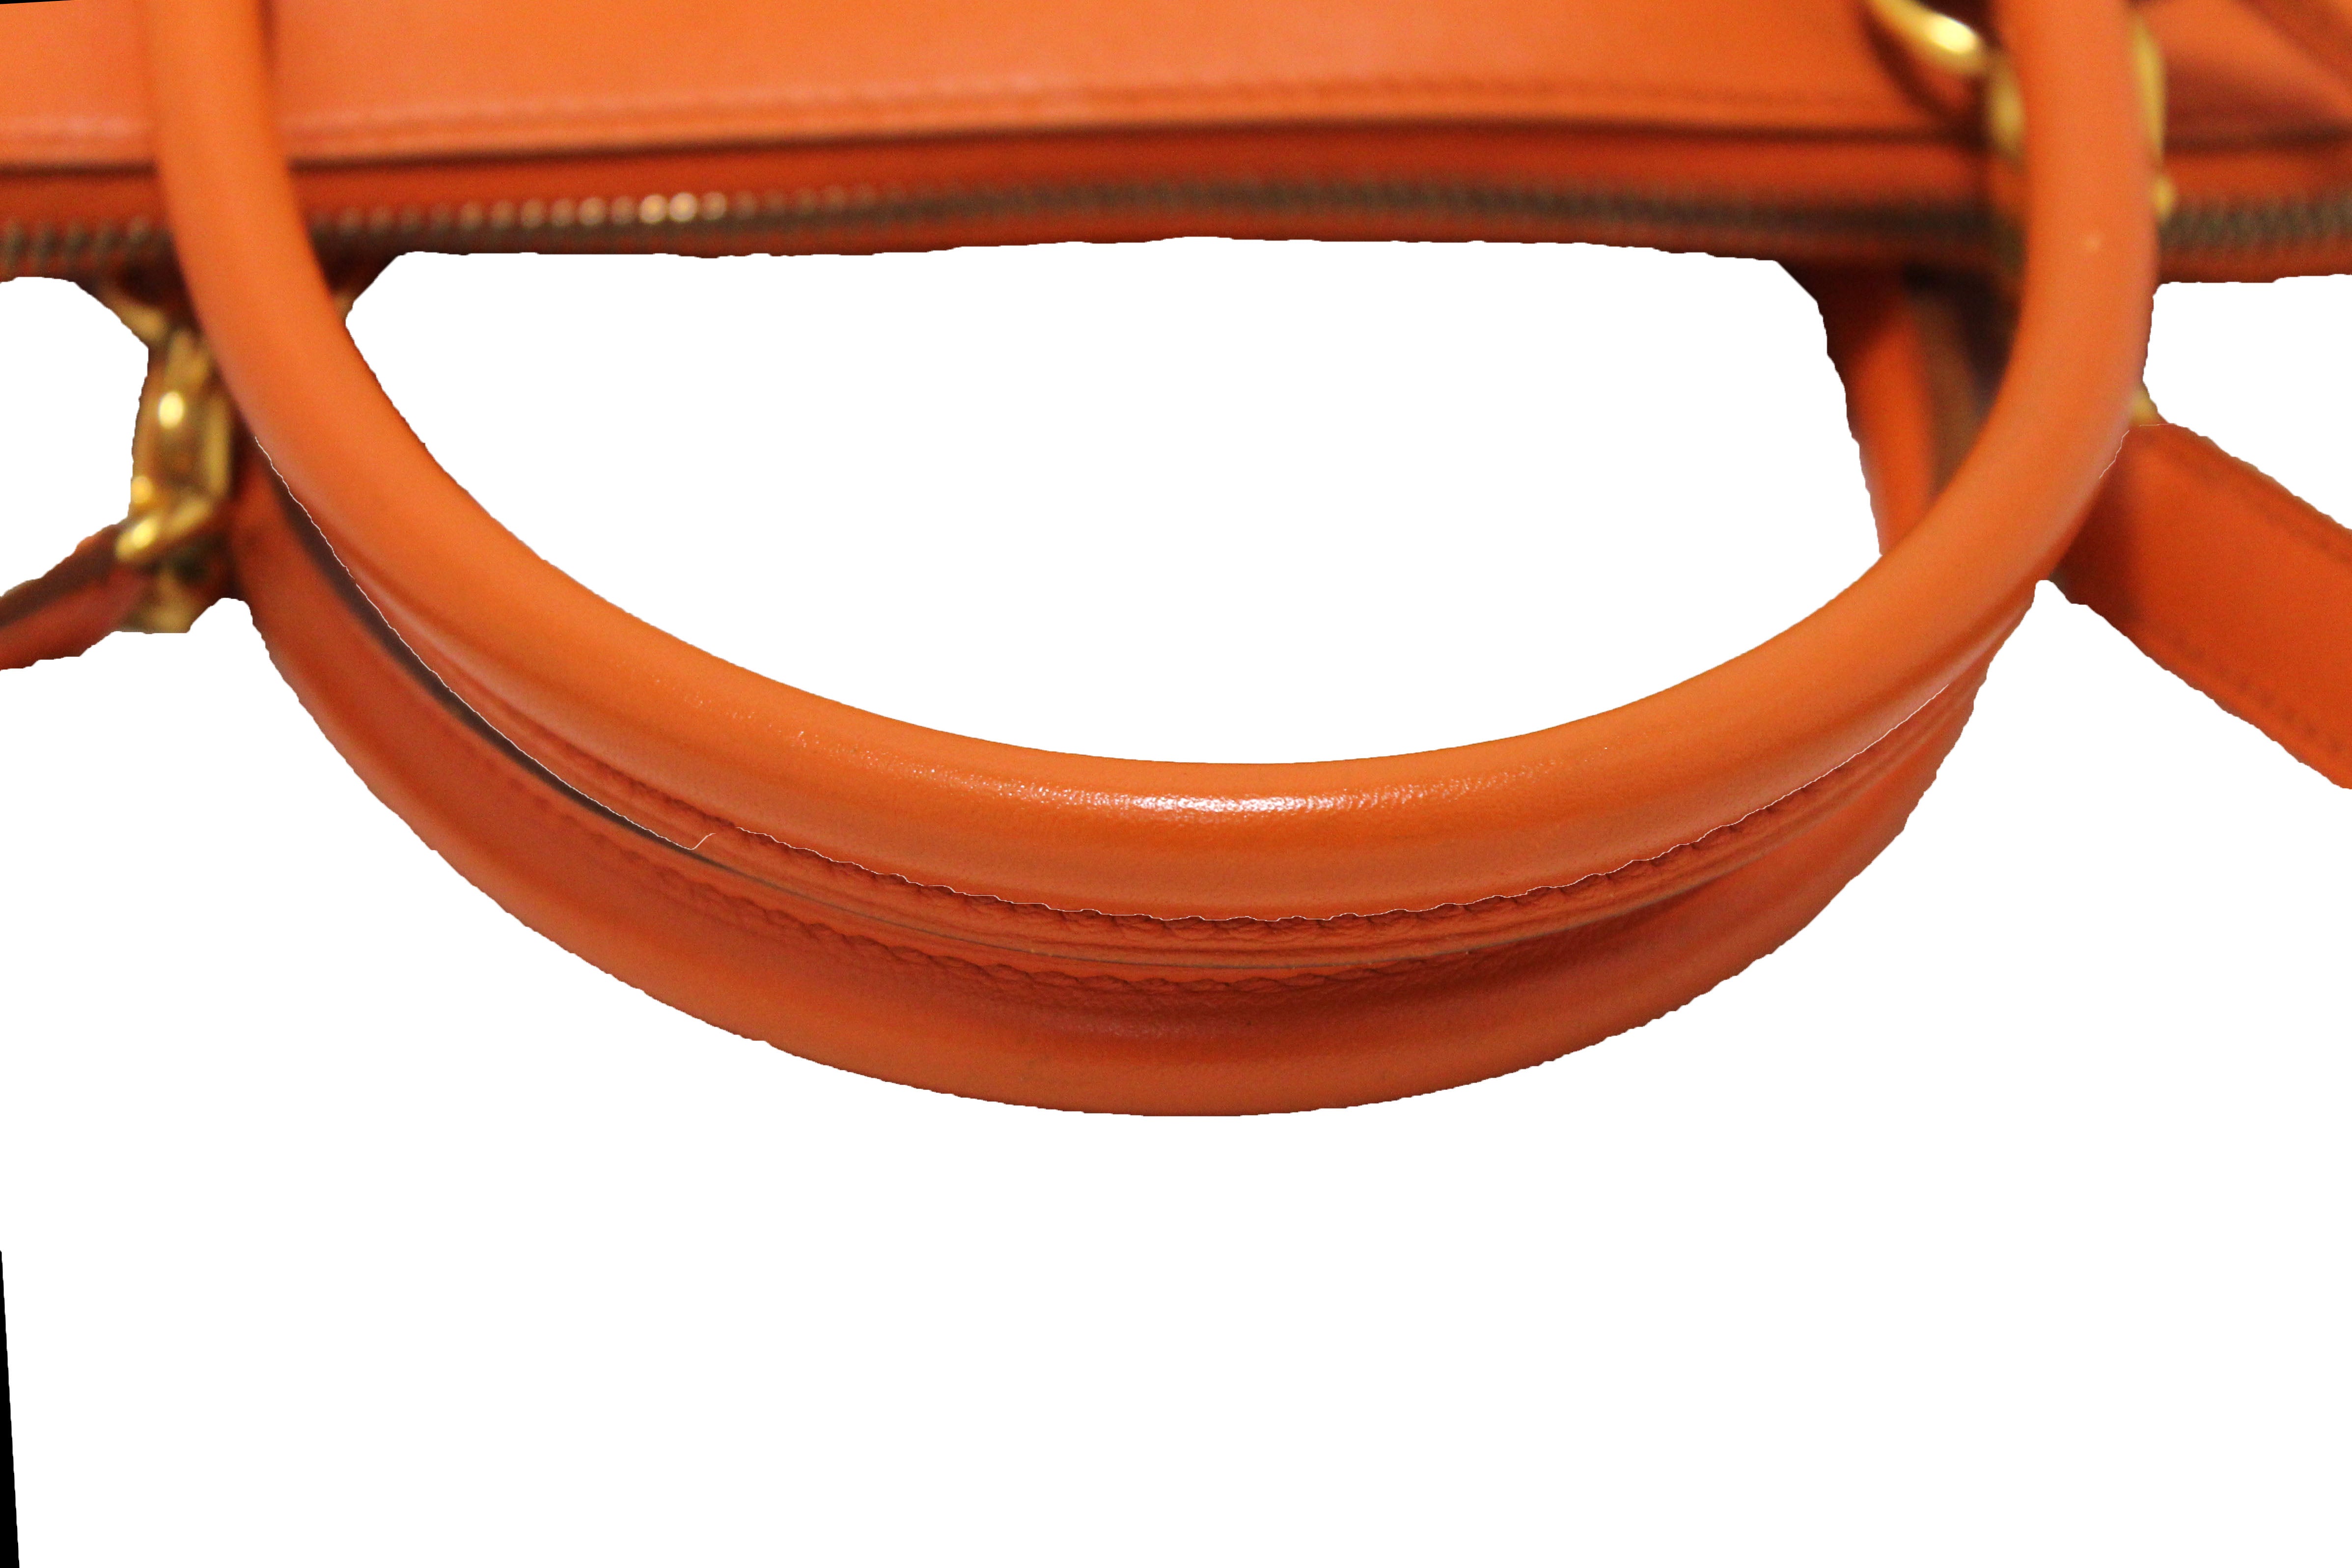 Hermes Orange Togo Leather Bolide 31 Bag